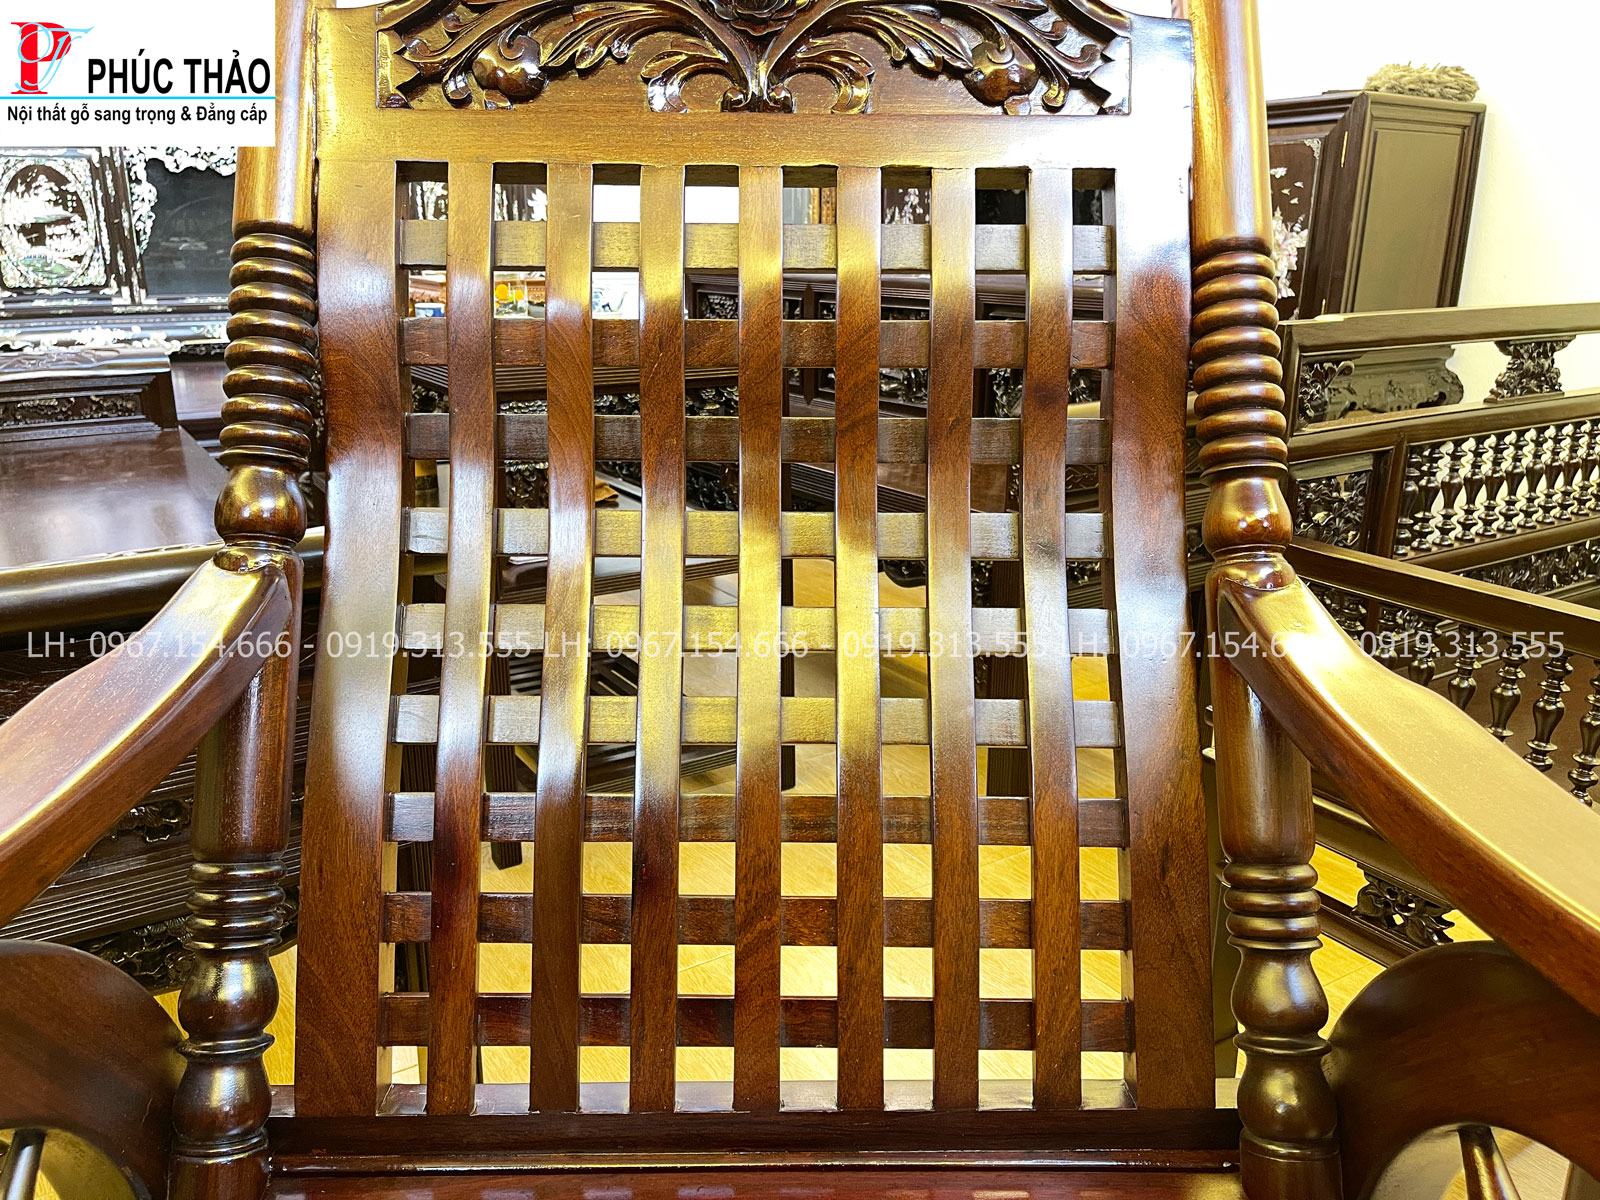 Đồ gỗ Phúc Thảo – cơ sở cung cấp ghế bập bênh gỗ gụ